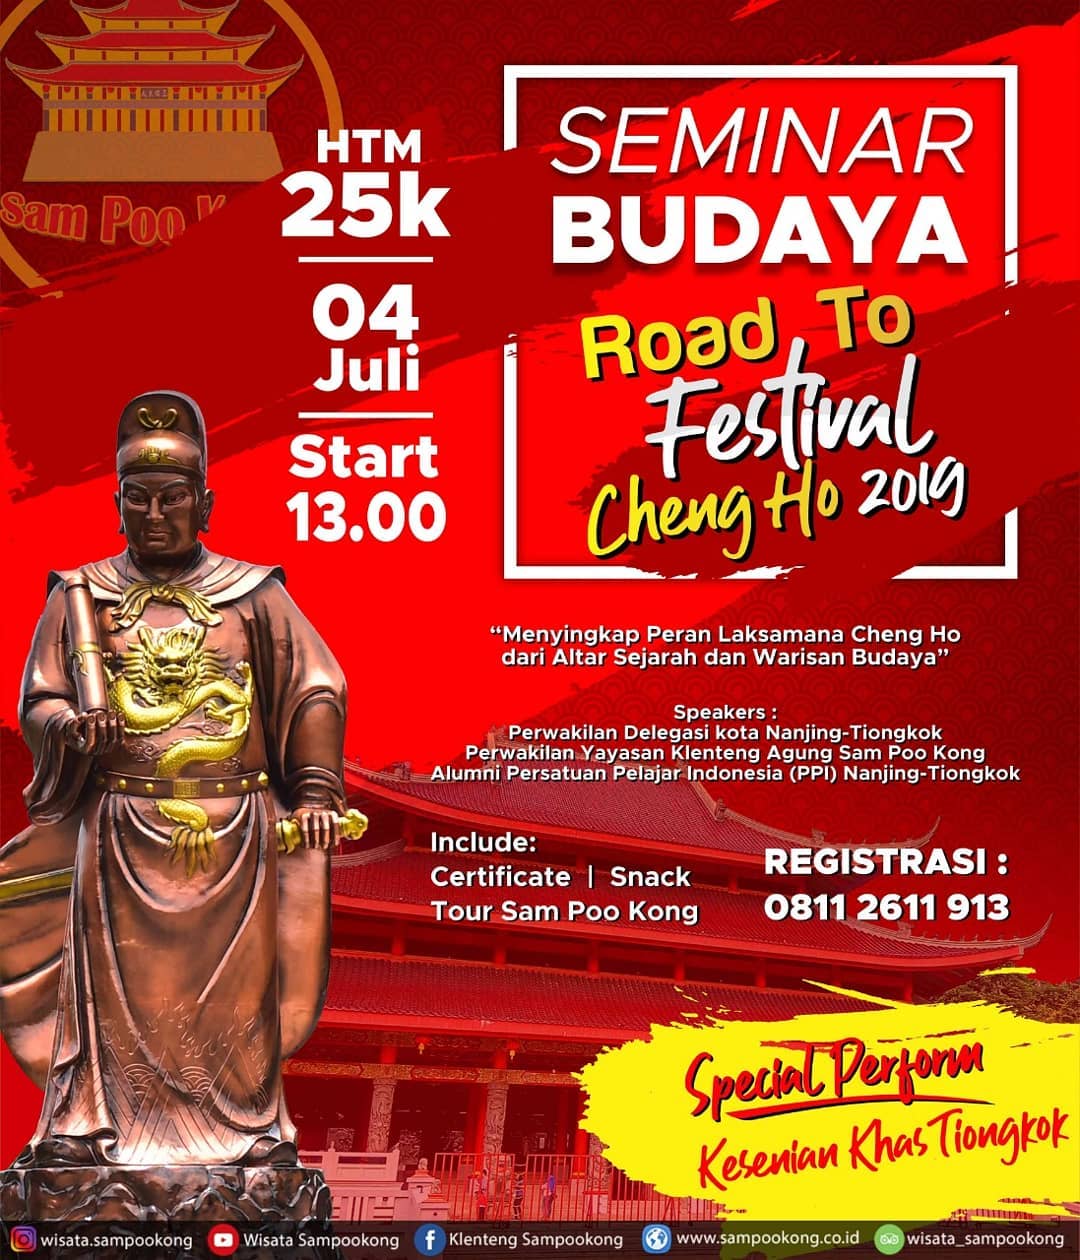 EVENTS SEMARANG : SEMINAR BUDAYA ROAD TO FESTIVAL CHENG HO 2019